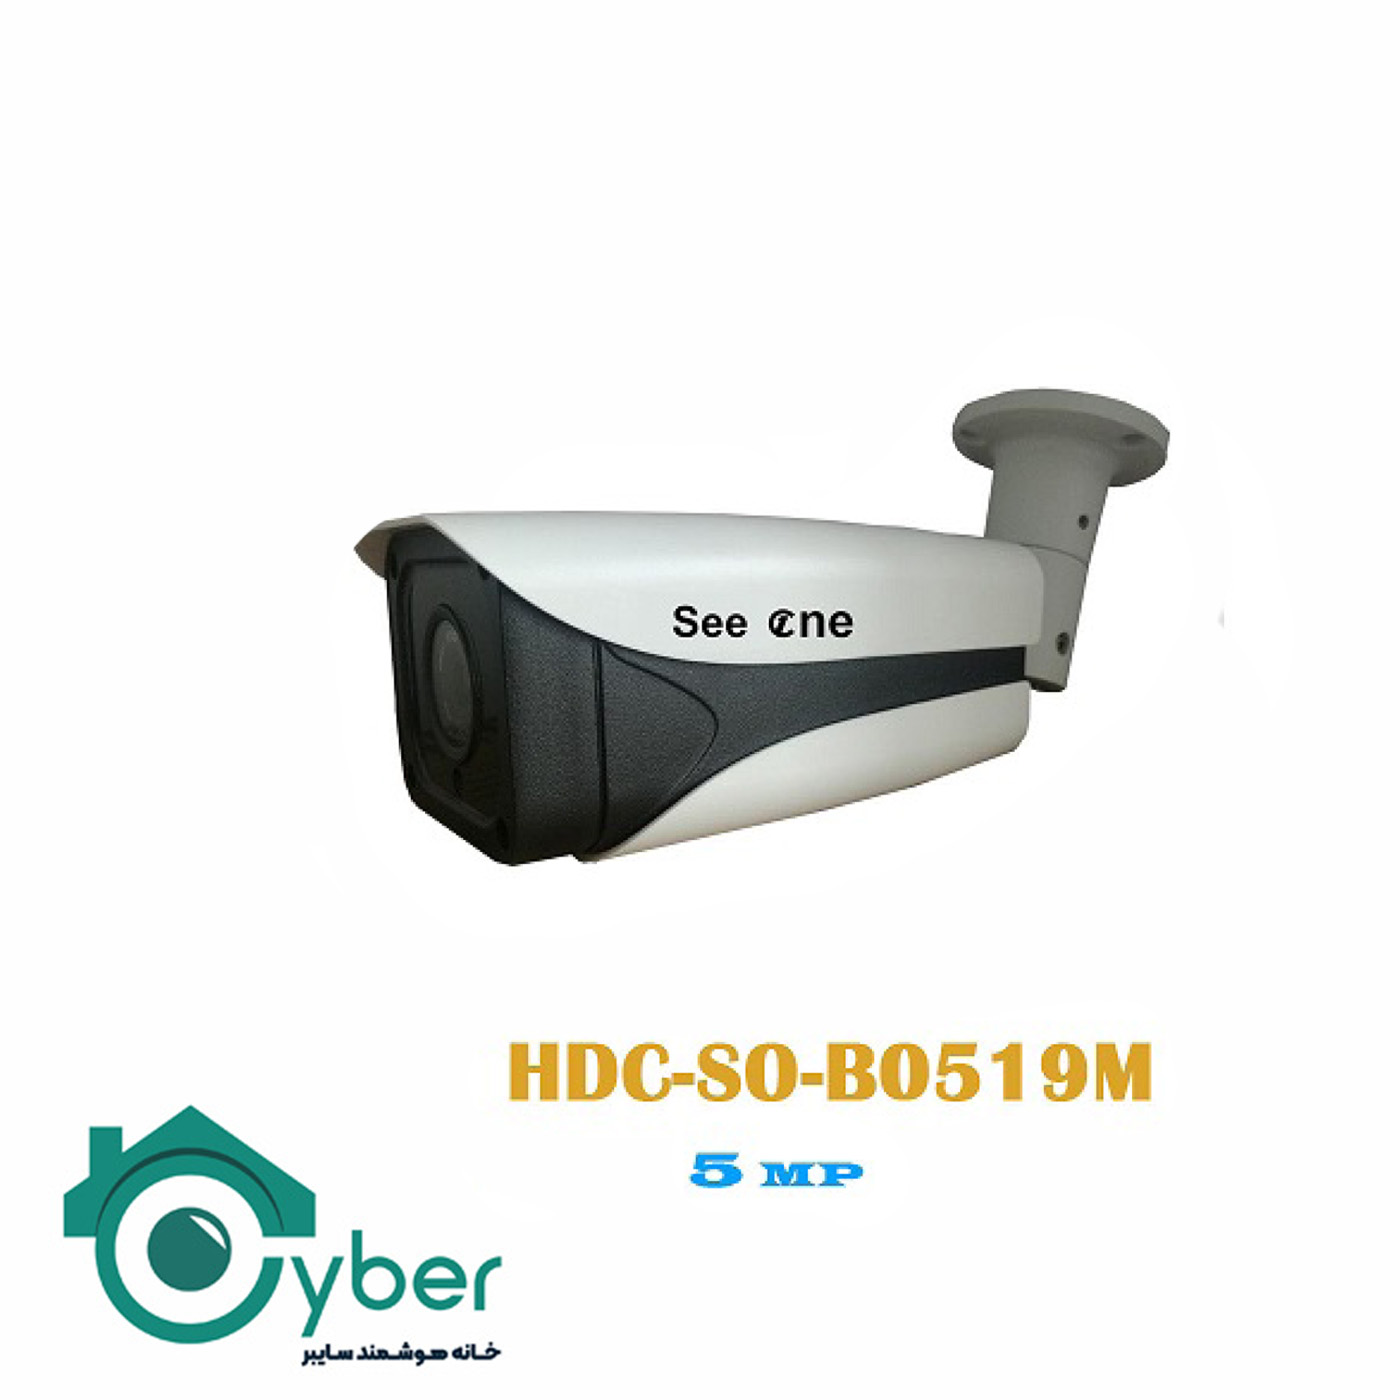 دوربین 5MP See one مدل HDC-S0-B0519M - سیوان